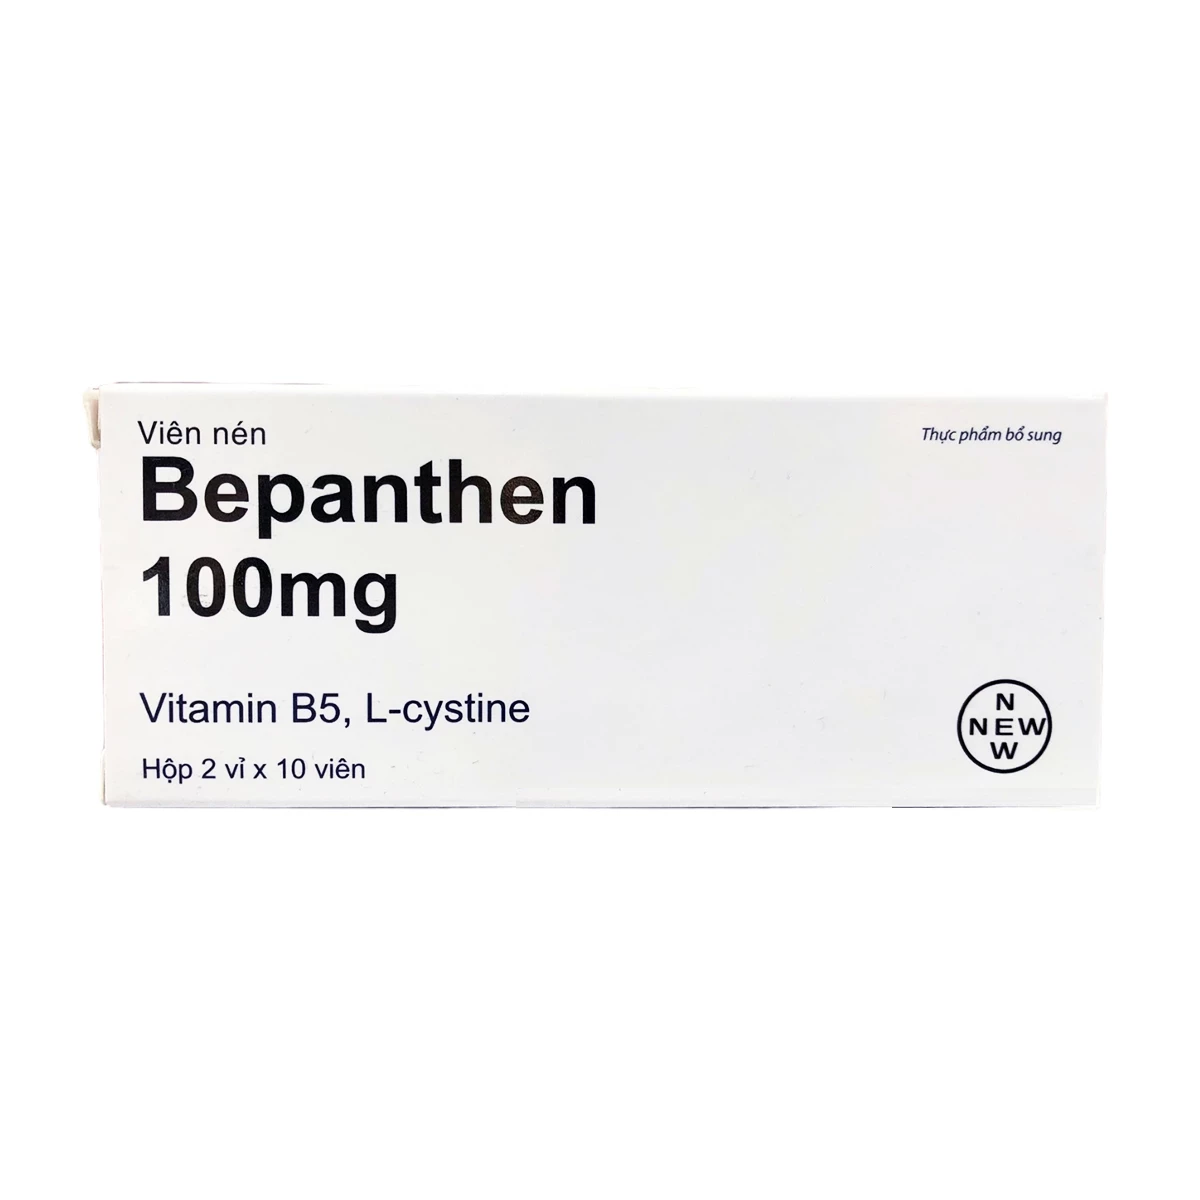 Bepanthen 100mg - Bổ sung vitamin B5 cho cơ thể